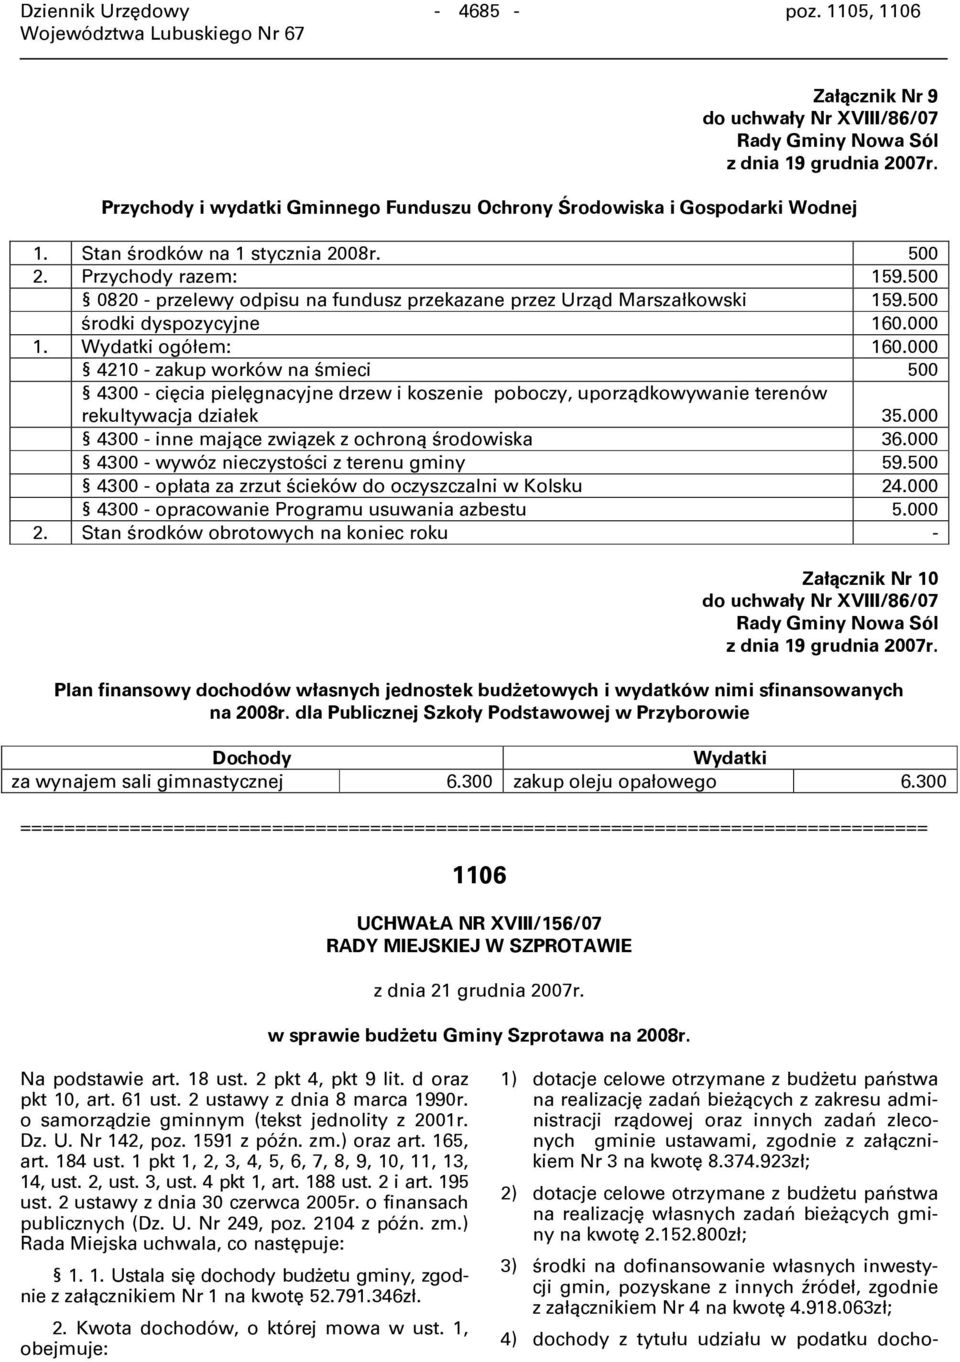 500 0820 - przelewy odpisu na fundusz przekazane przez Urząd Marszałkowski 159.500 środki dyspozycyjne 160.000 1. Wydatki ogółem: 160.